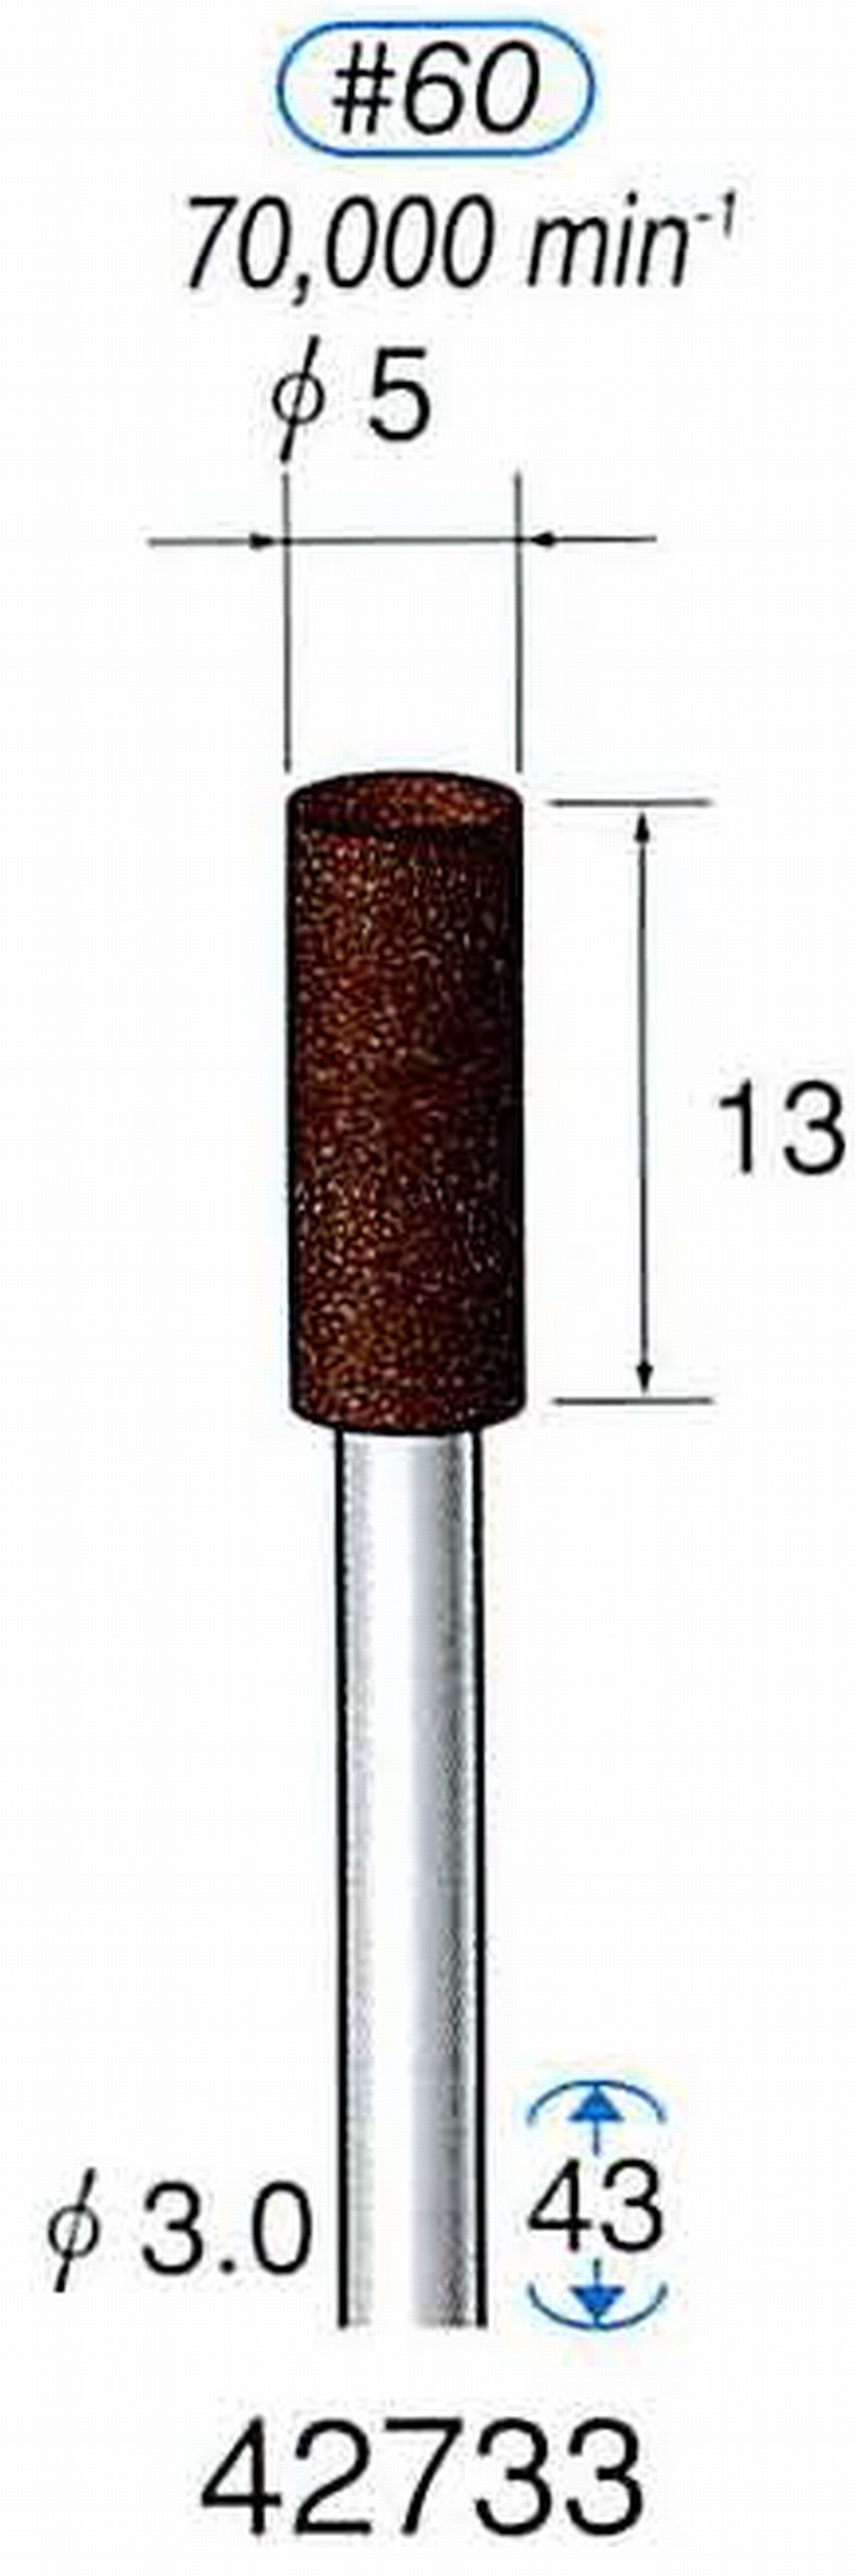 ナカニシ/NAKANISHI 軸付砥石(A・WA砥粒) ブラウン砥石 軸径(シャンク) φ3.0mm 42733